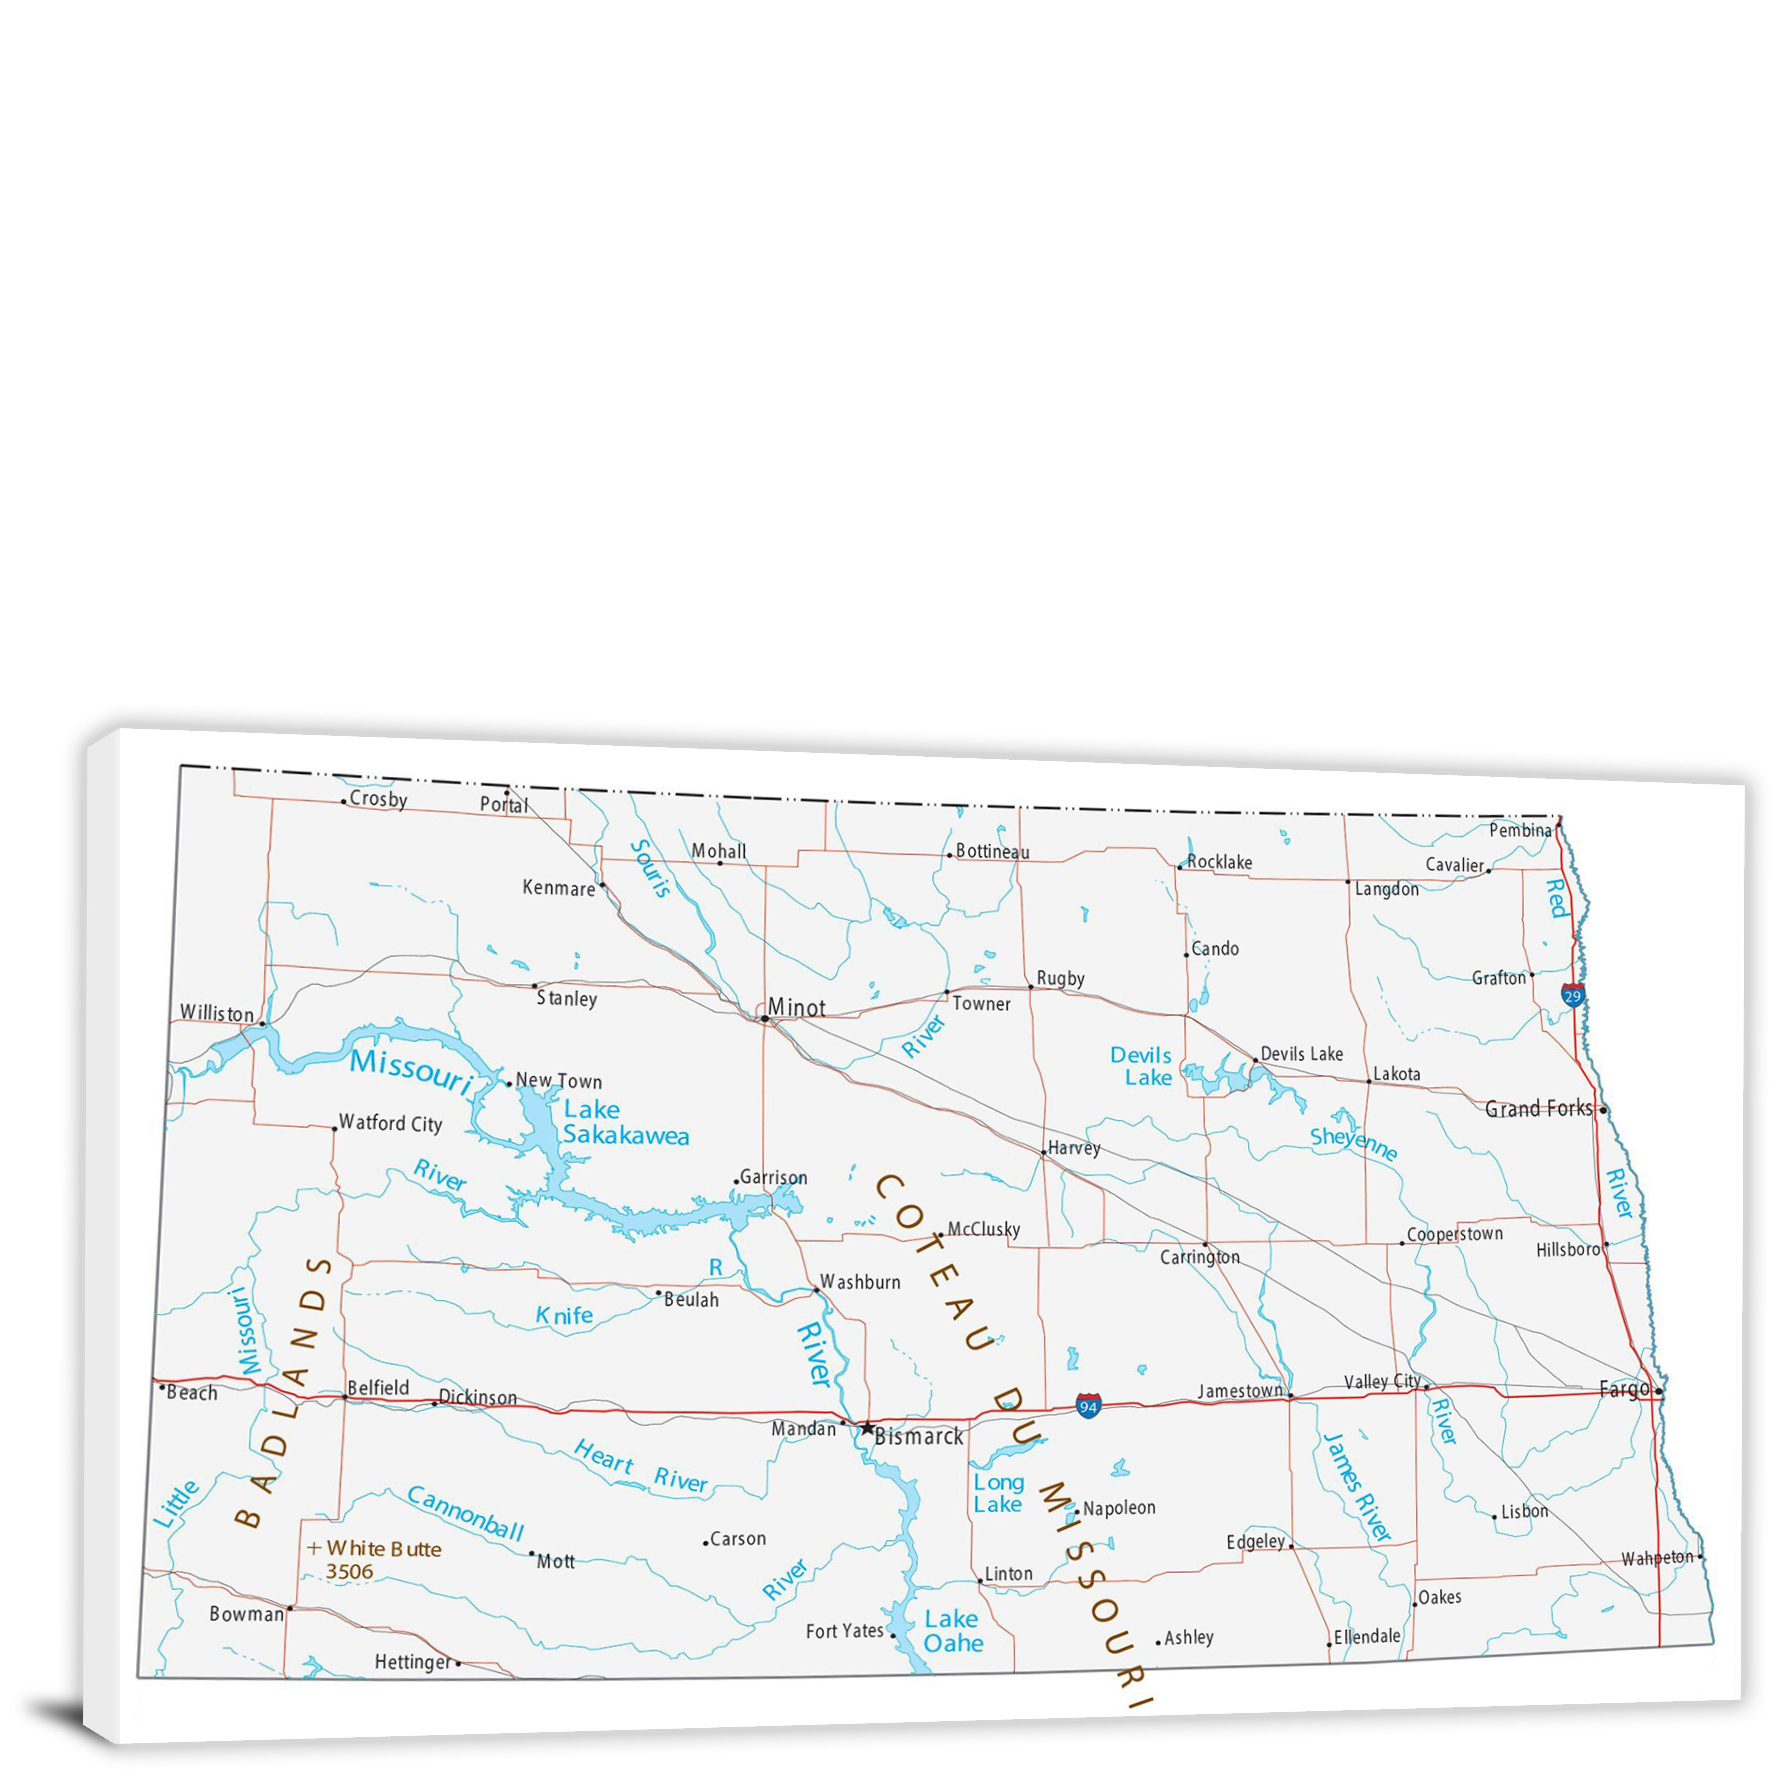 CWA713 North Dakota Roads And Cities Map 00 